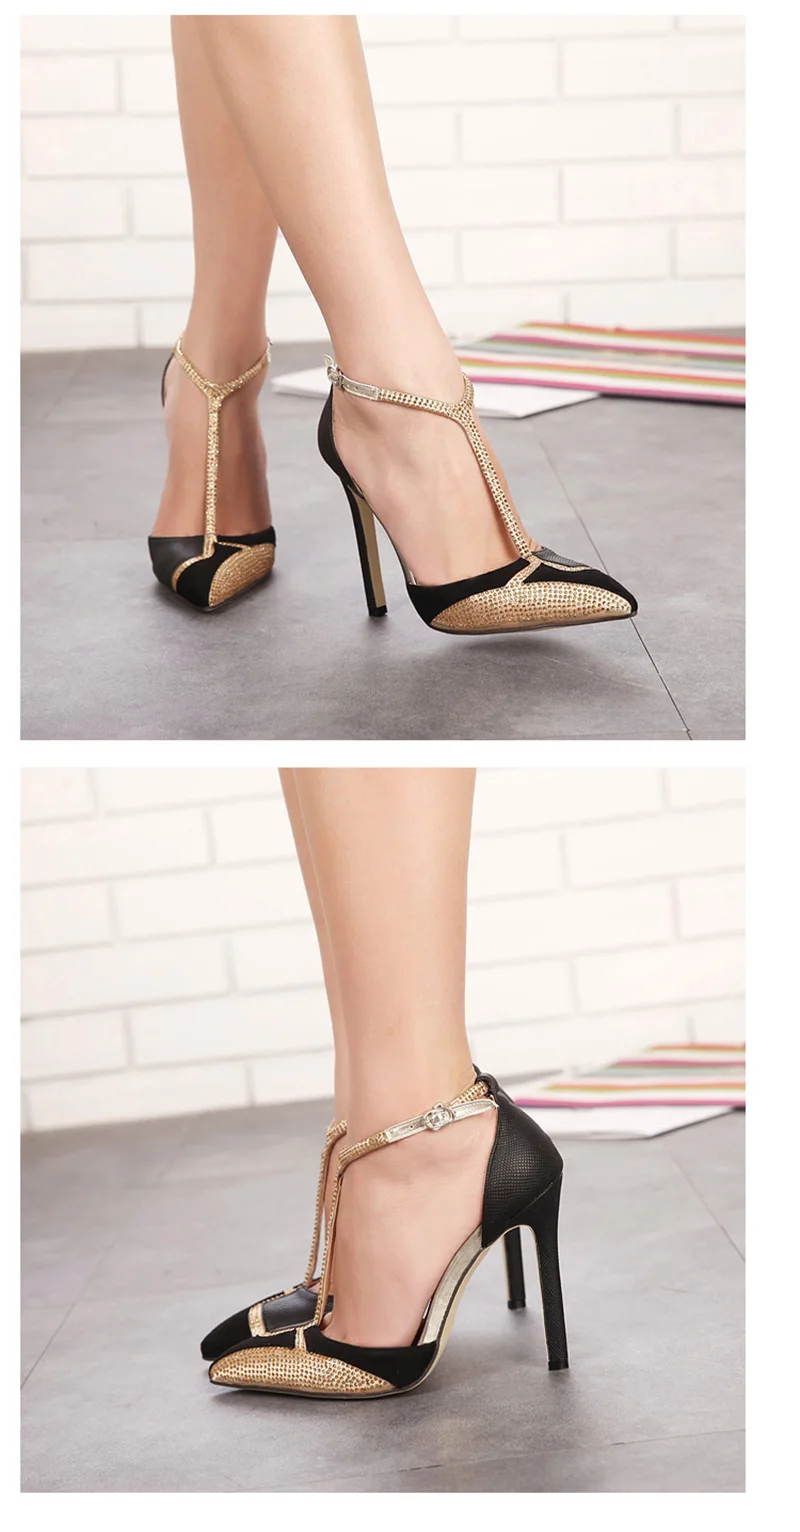 Стильная женская обувь женские туфли на высоком каблуке с острым носком г. женские туфли на выход Элитный бренд на очень высоком каблуке золотистый и черный B072